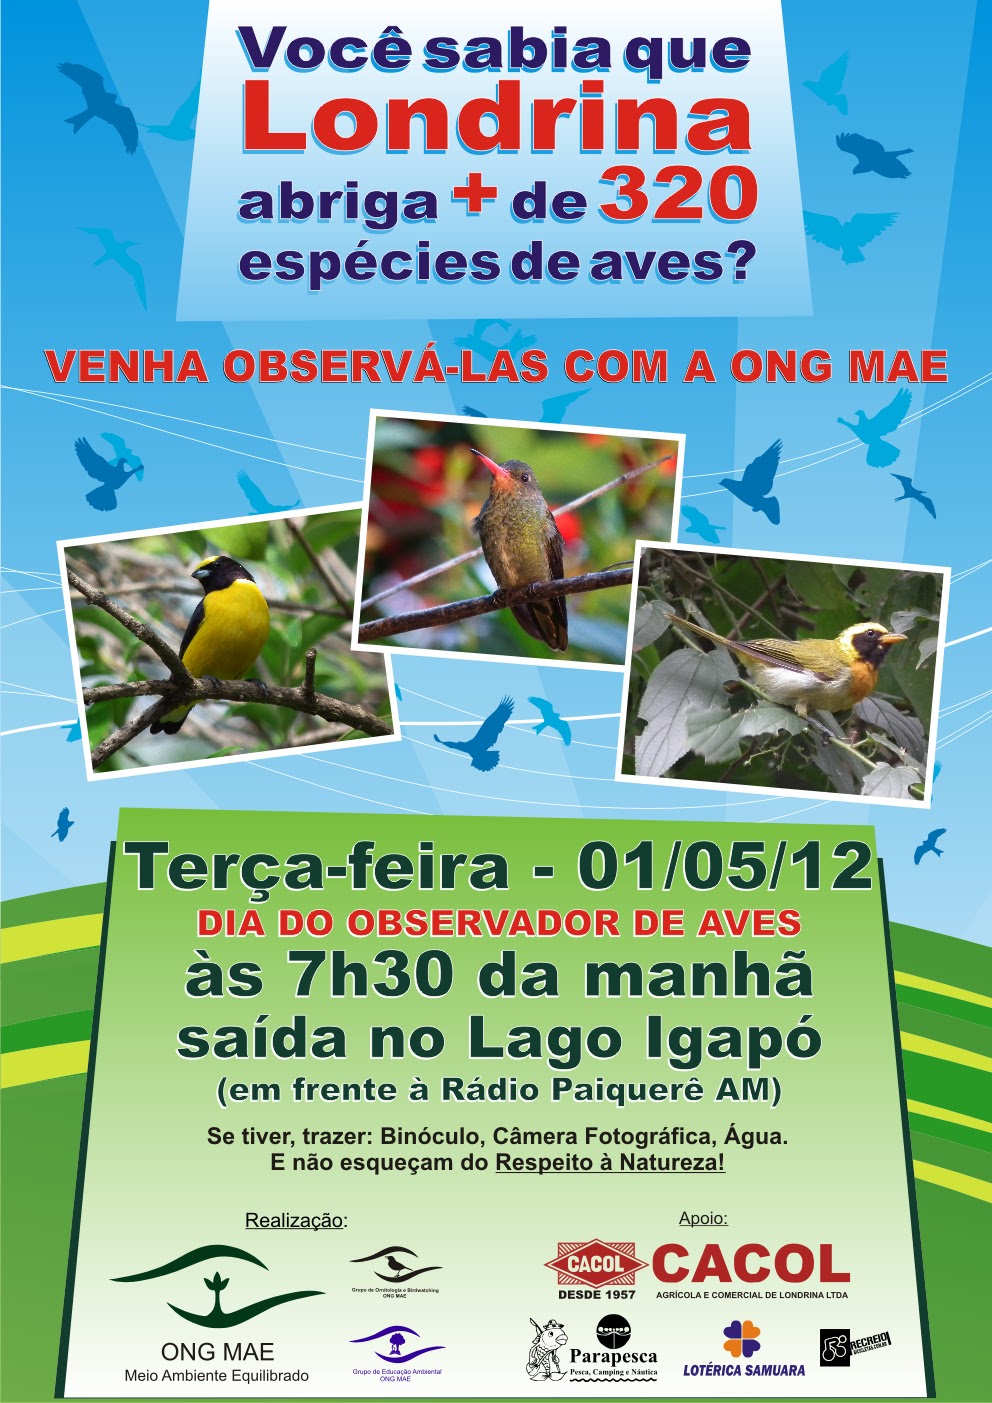 Ornitologia E Birdwatching ONG MAE A CHUVA NOS ATRAPALHOU PARA O PASSEIO DO DIA DO OBSERVADOR